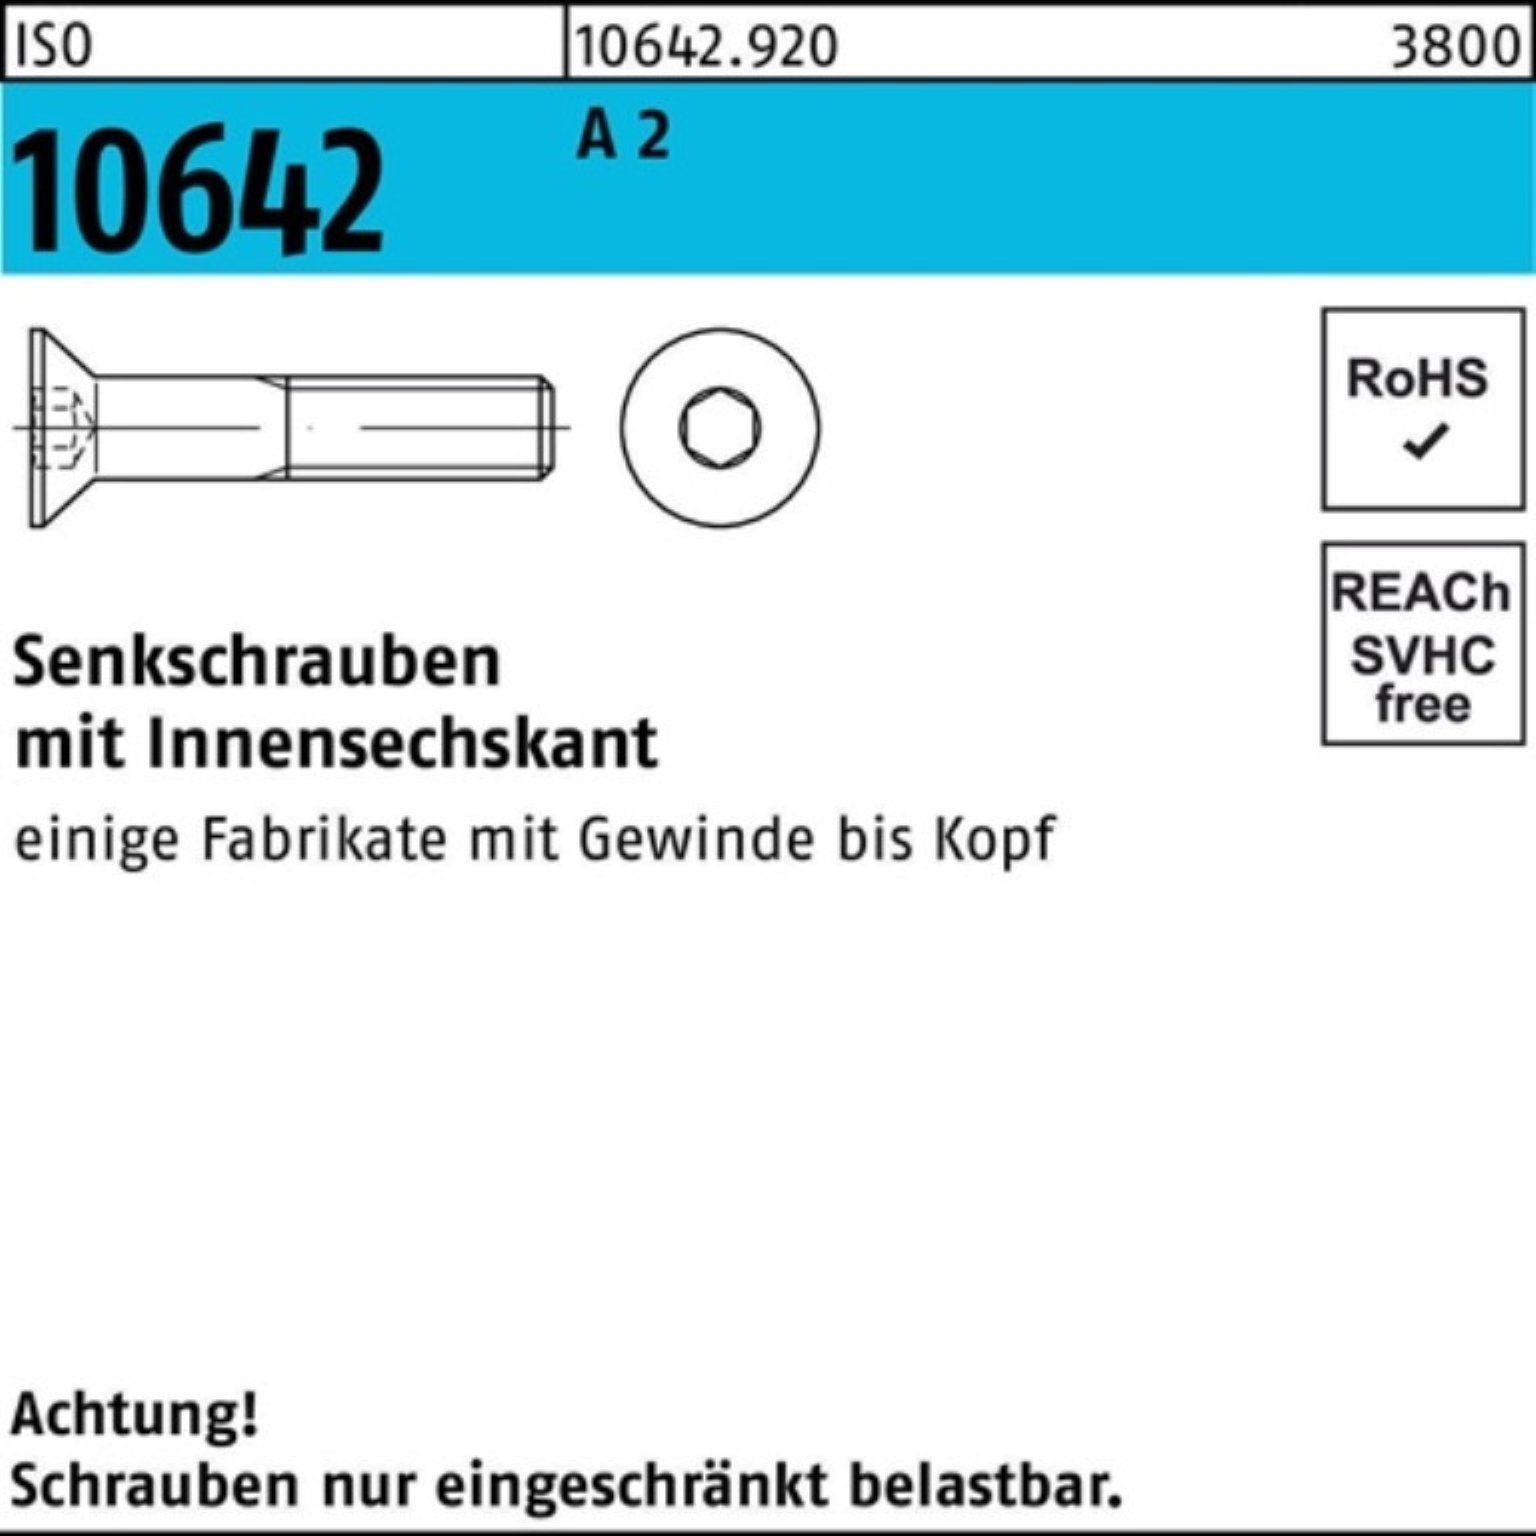 A Reyher Innen-6kt 200 M4x Pack 200er 2 Senkschraube ISO 35 10642 Senkschraube ISO Stück